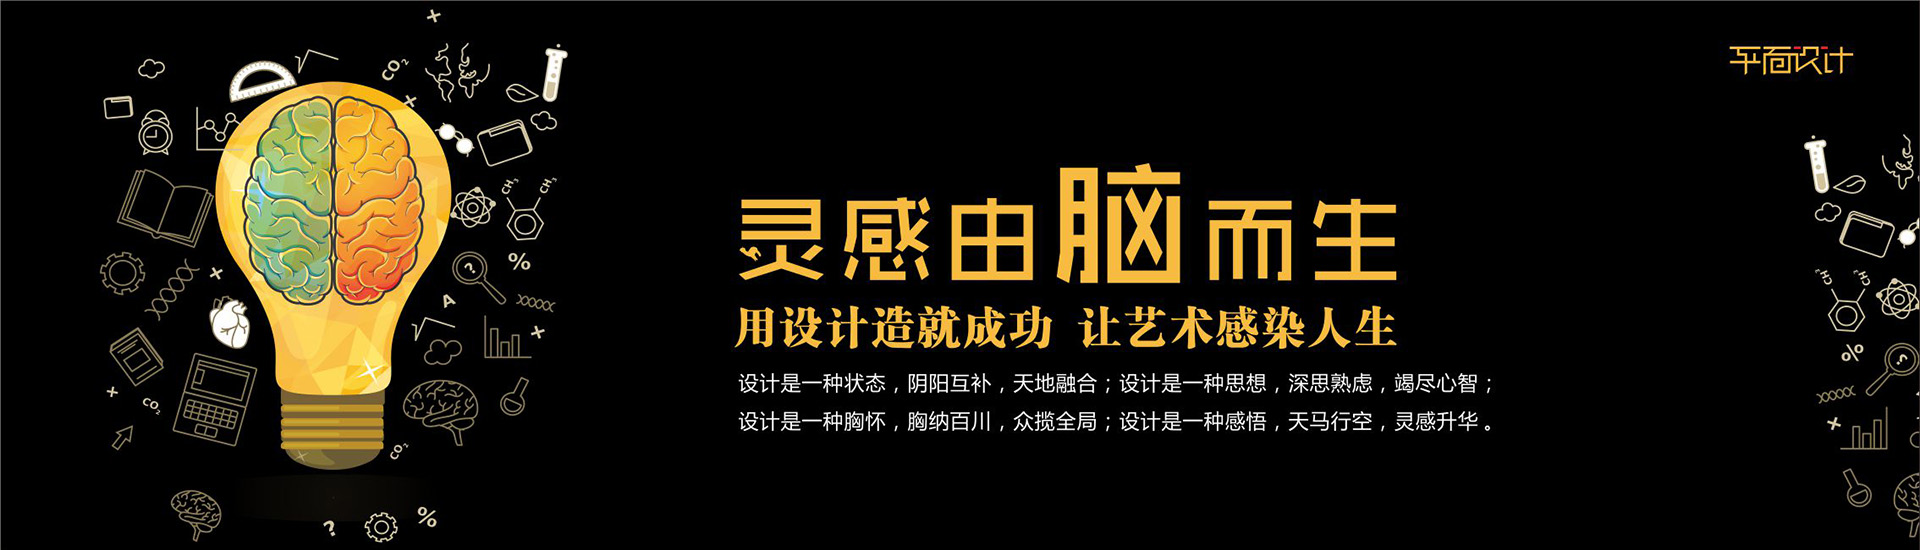 黑龍江五洲國際展覽廣告有限責任公司